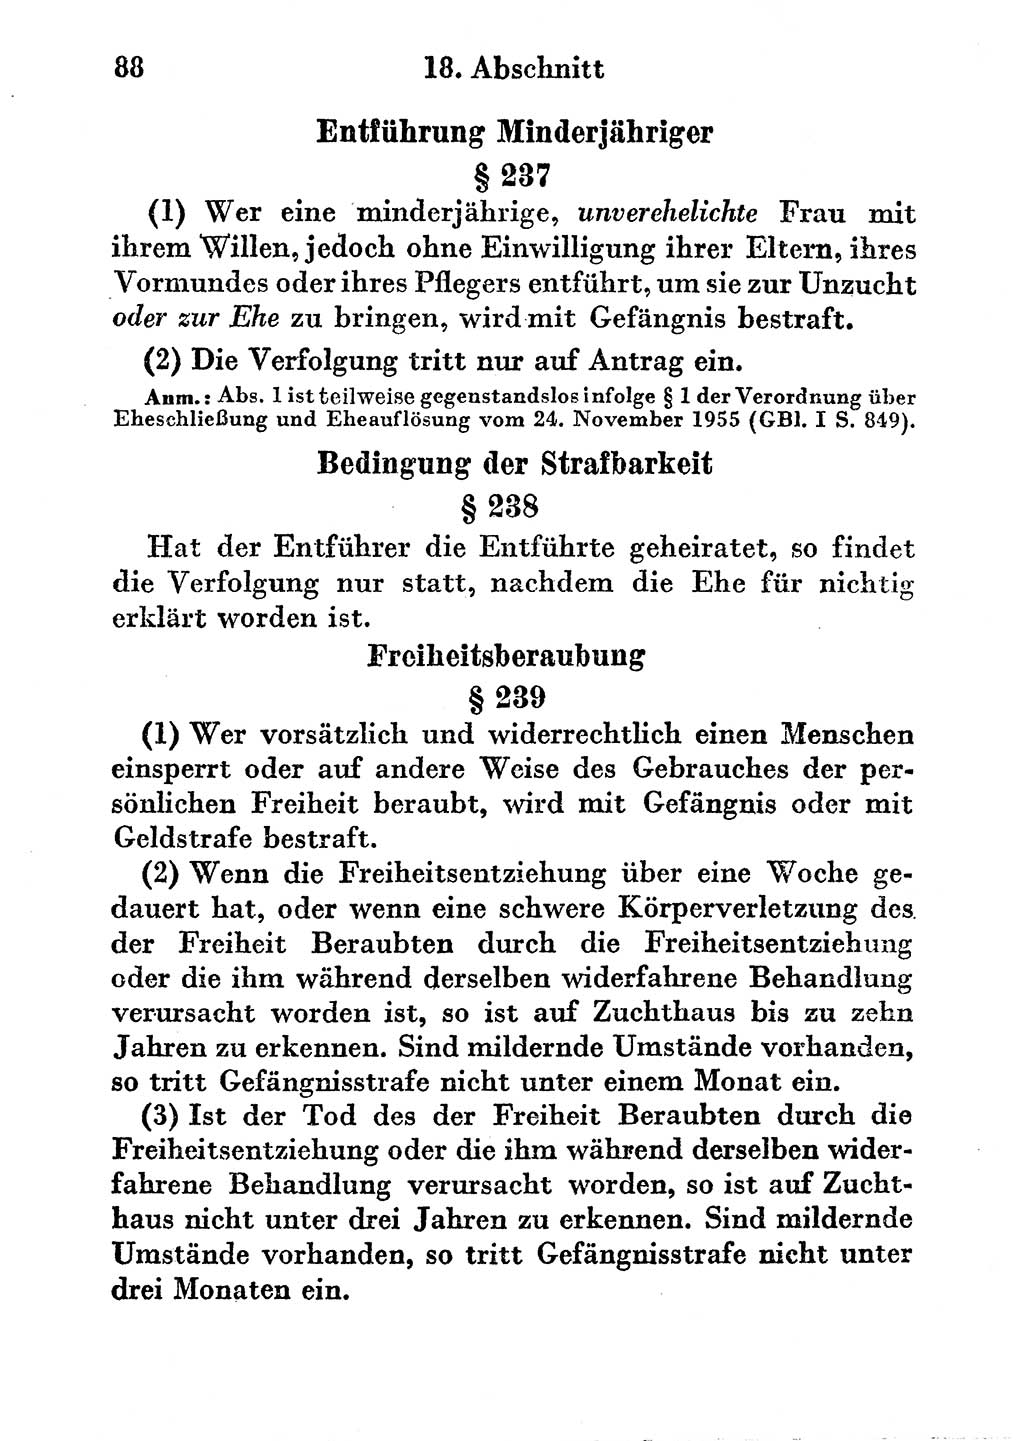 Strafgesetzbuch (StGB) und andere Strafgesetze [Deutsche Demokratische Republik (DDR)] 1956, Seite 88 (StGB Strafges. DDR 1956, S. 88)